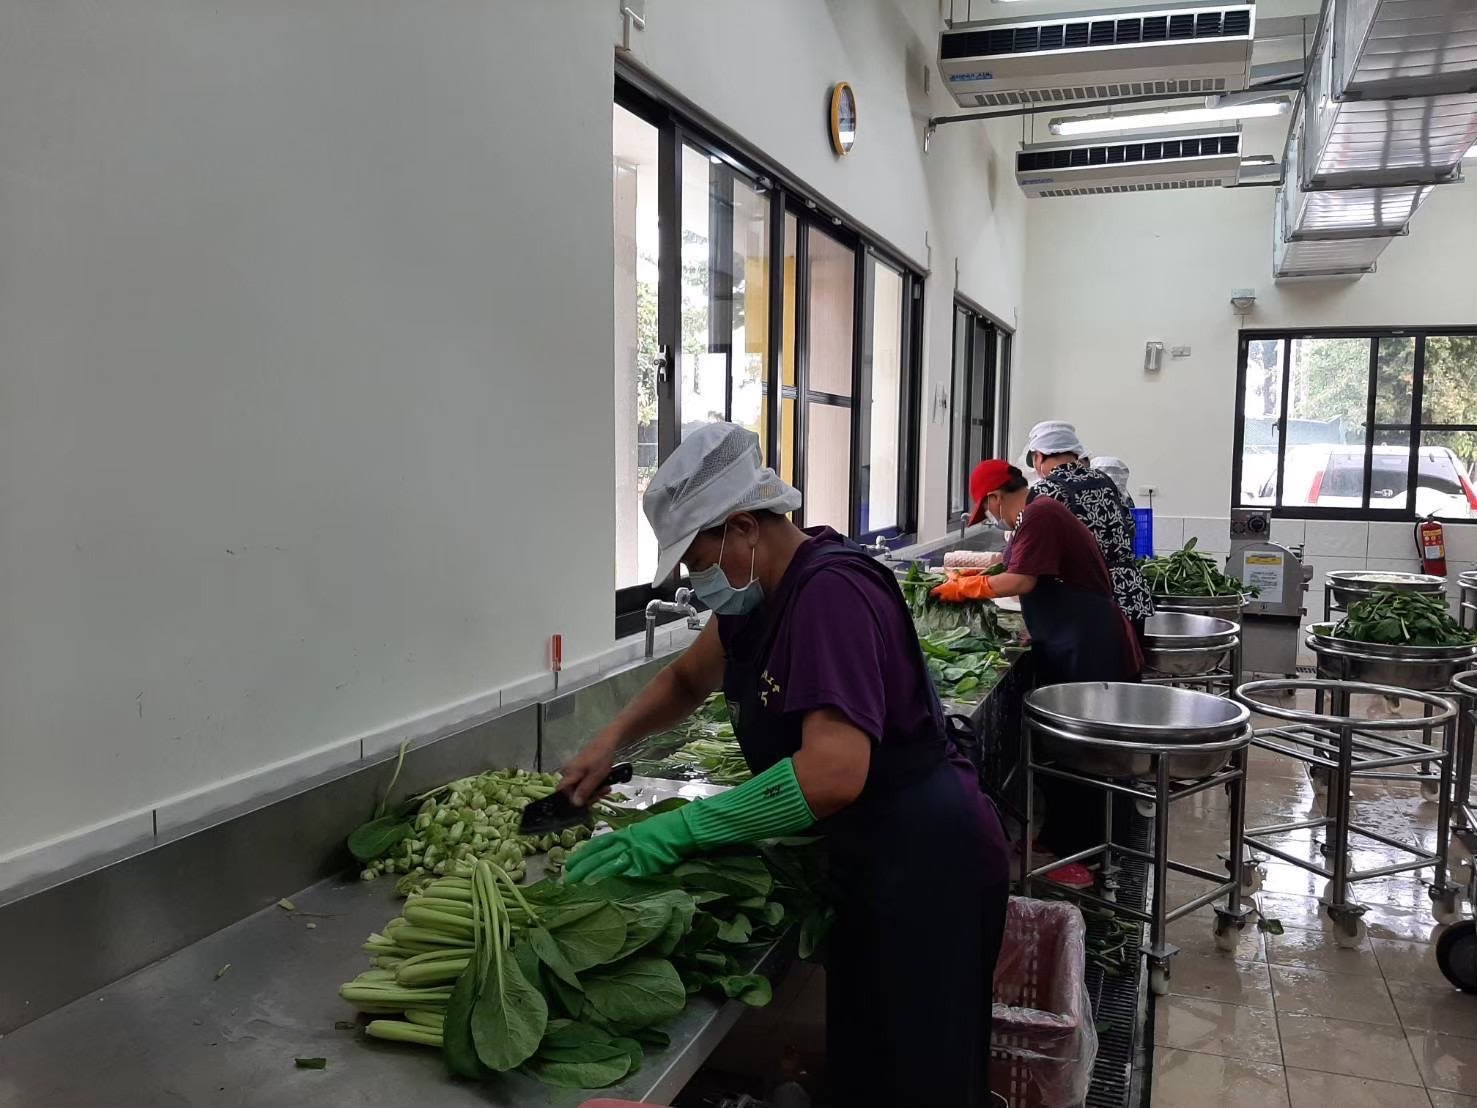 台南市教育局表示，学校午餐食材采购、验收、制备及配膳等皆有明确的标准化作业流程。图／南市教育局提供